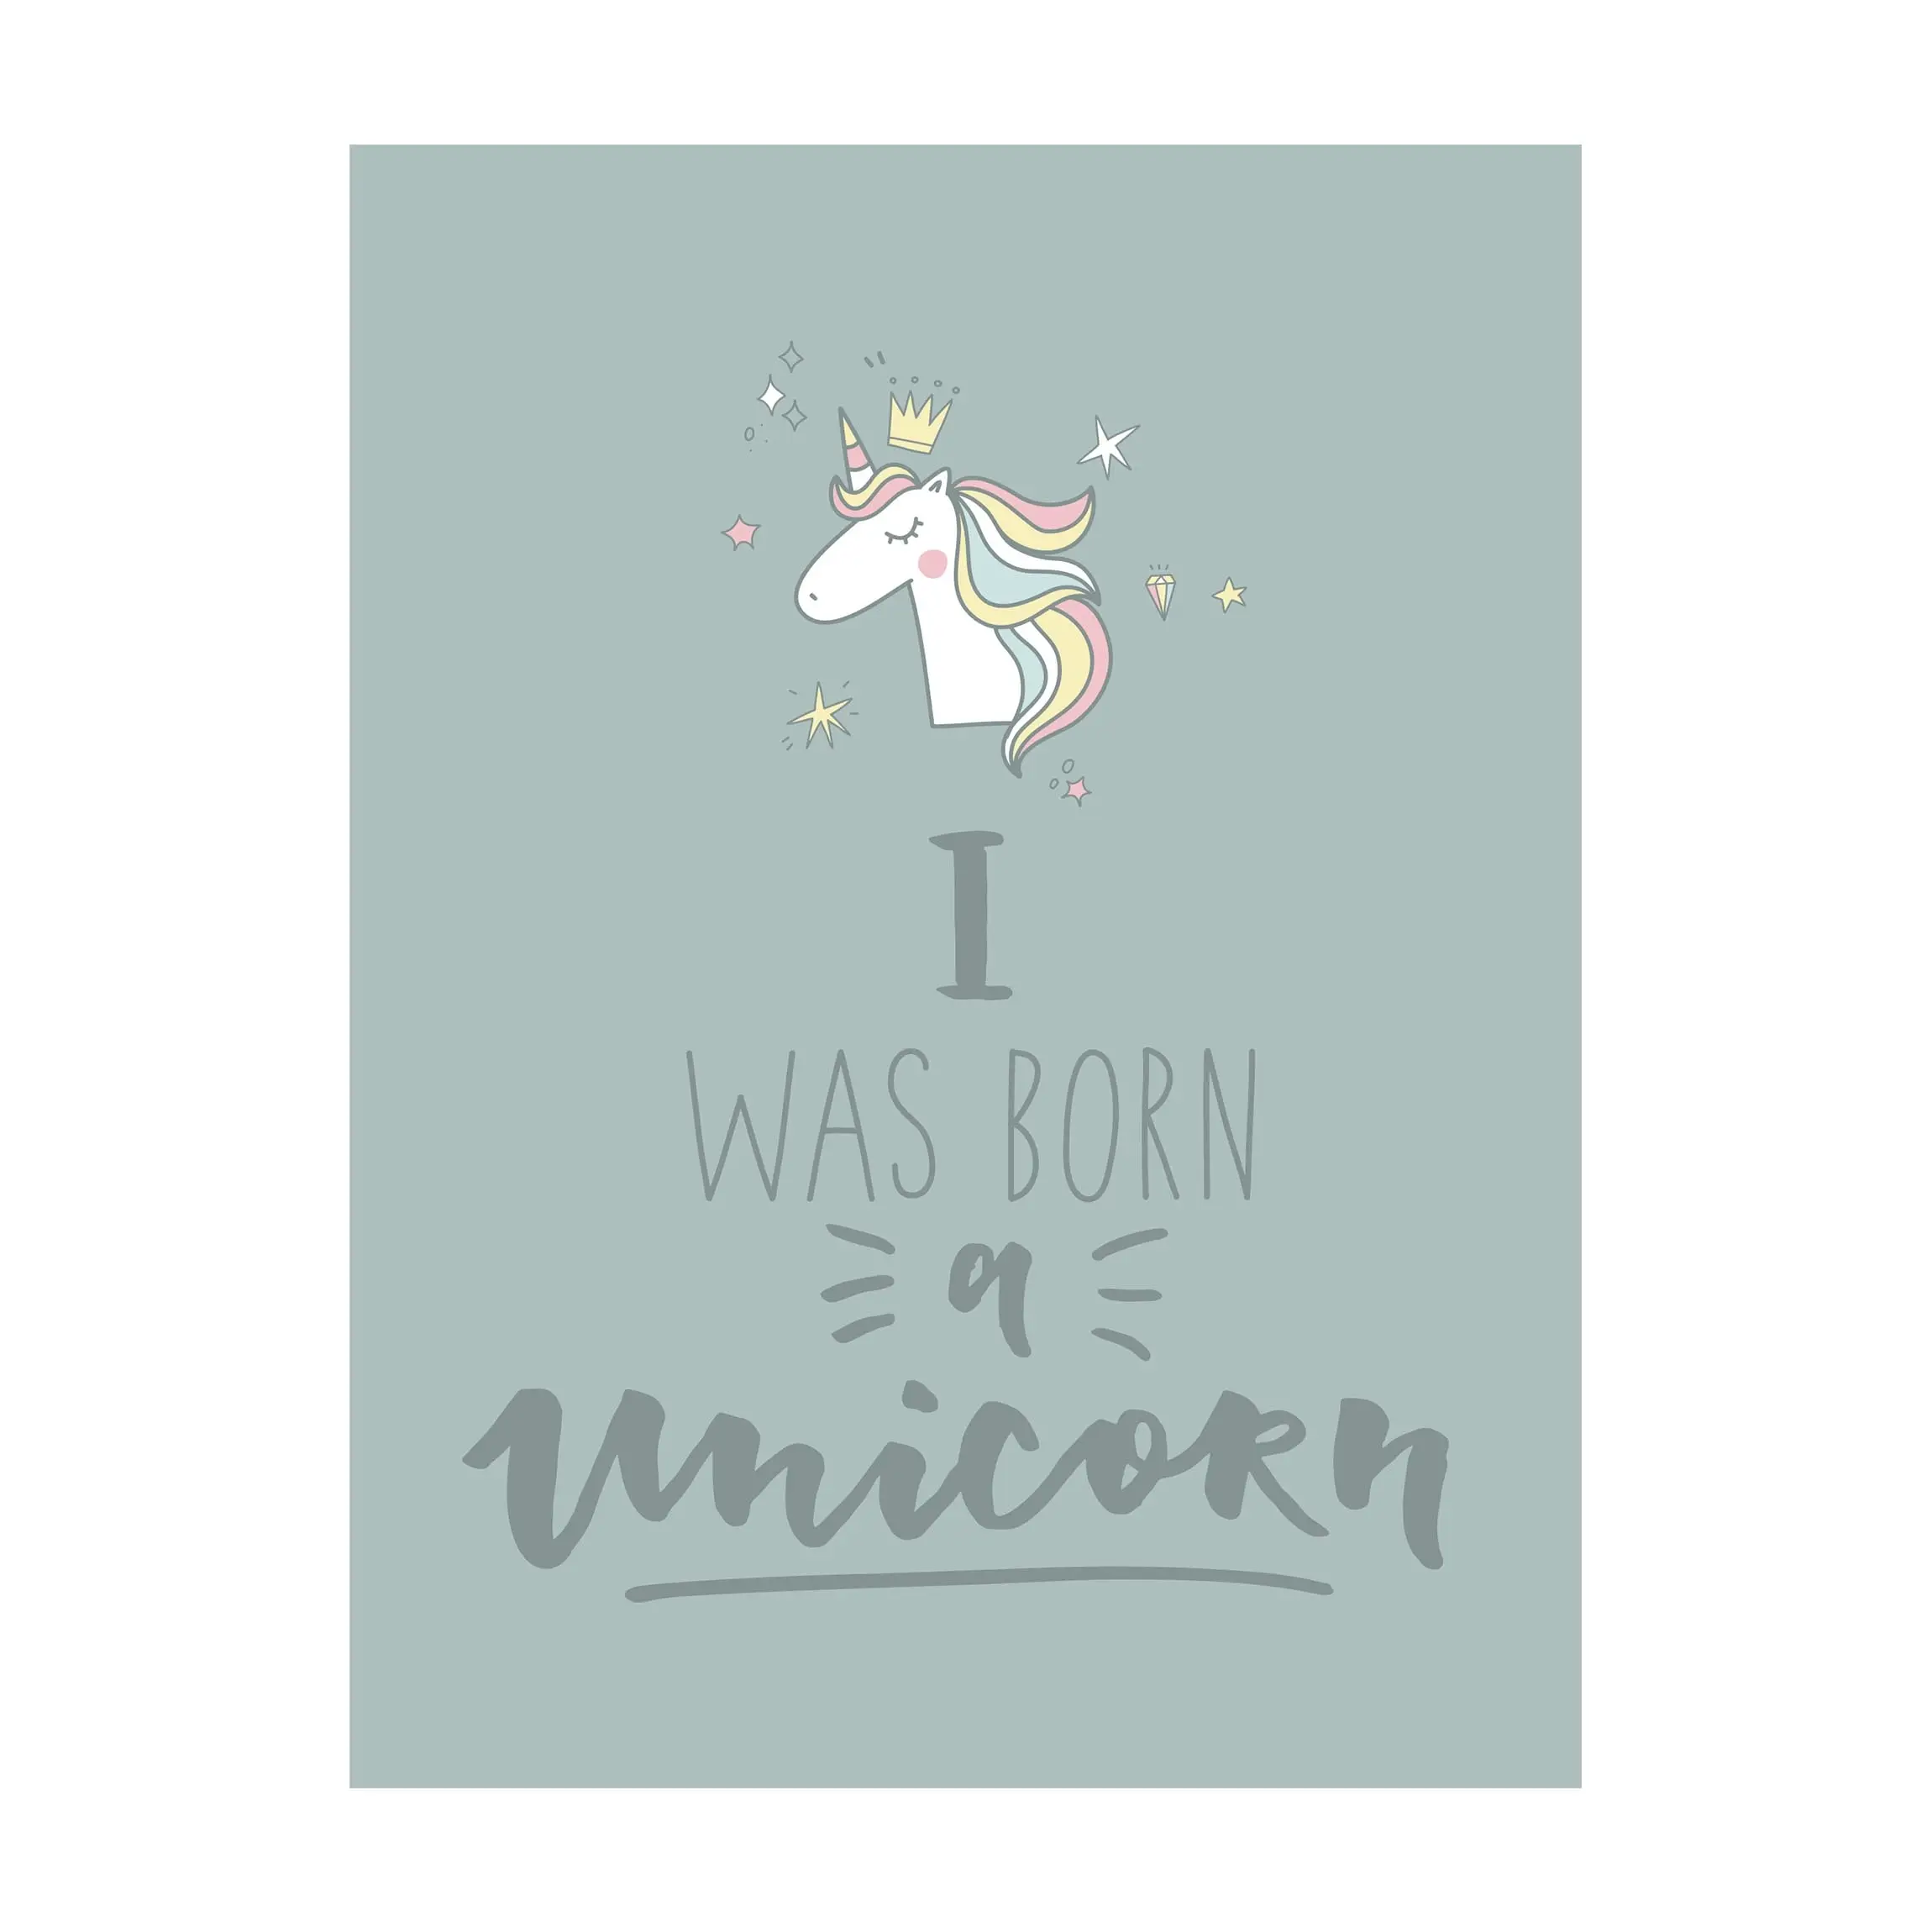 I was born a Unicorn